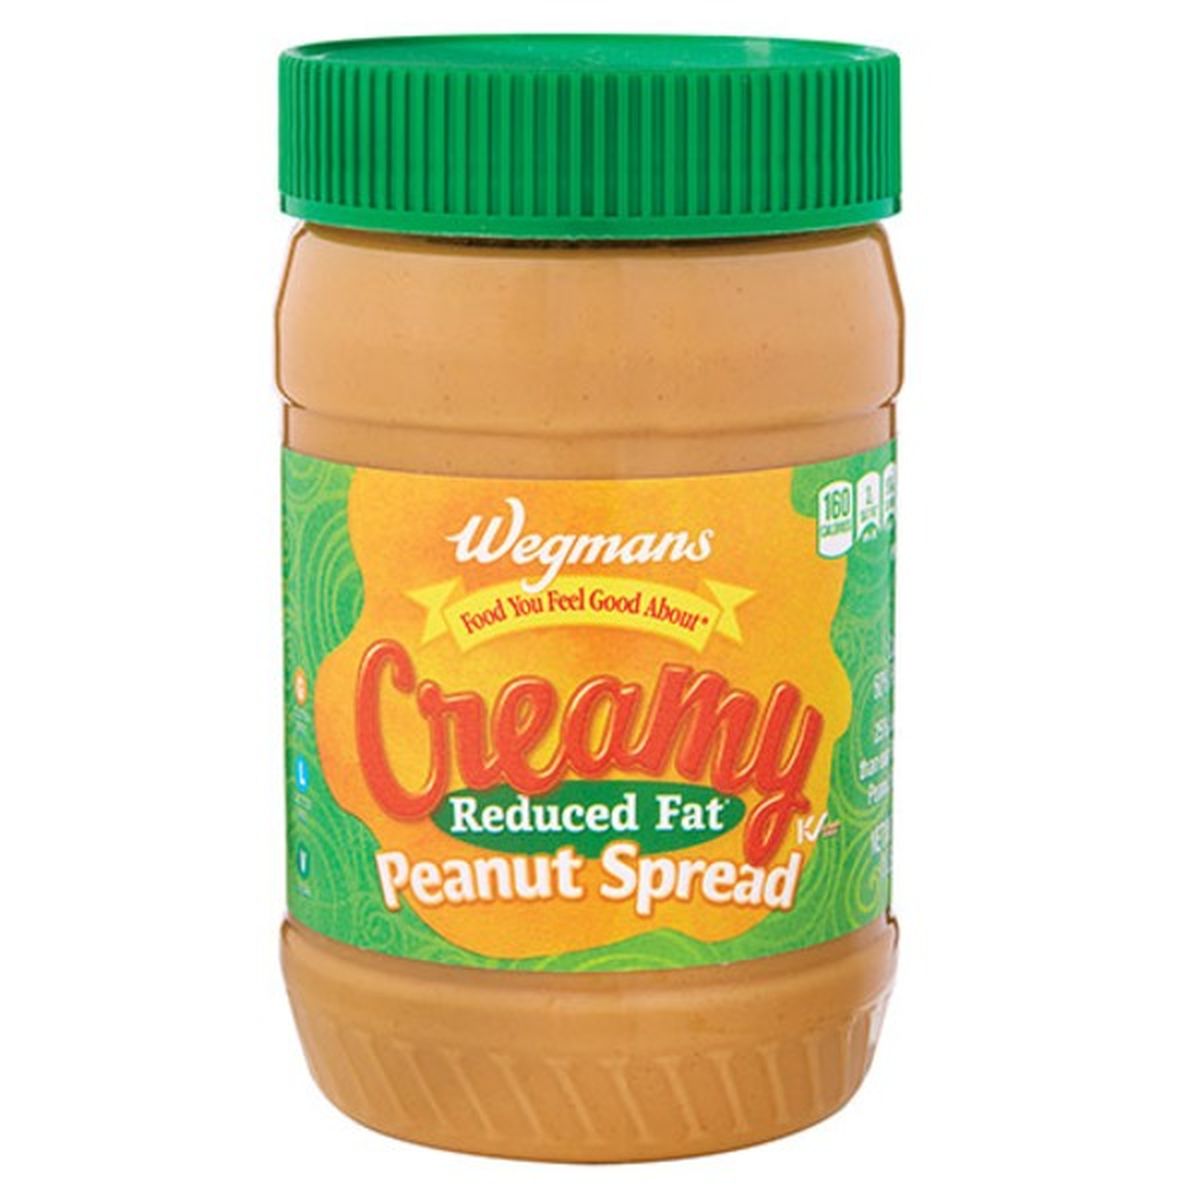 Calories in Wegmans Reduced Fat Creamy Peanut Butter